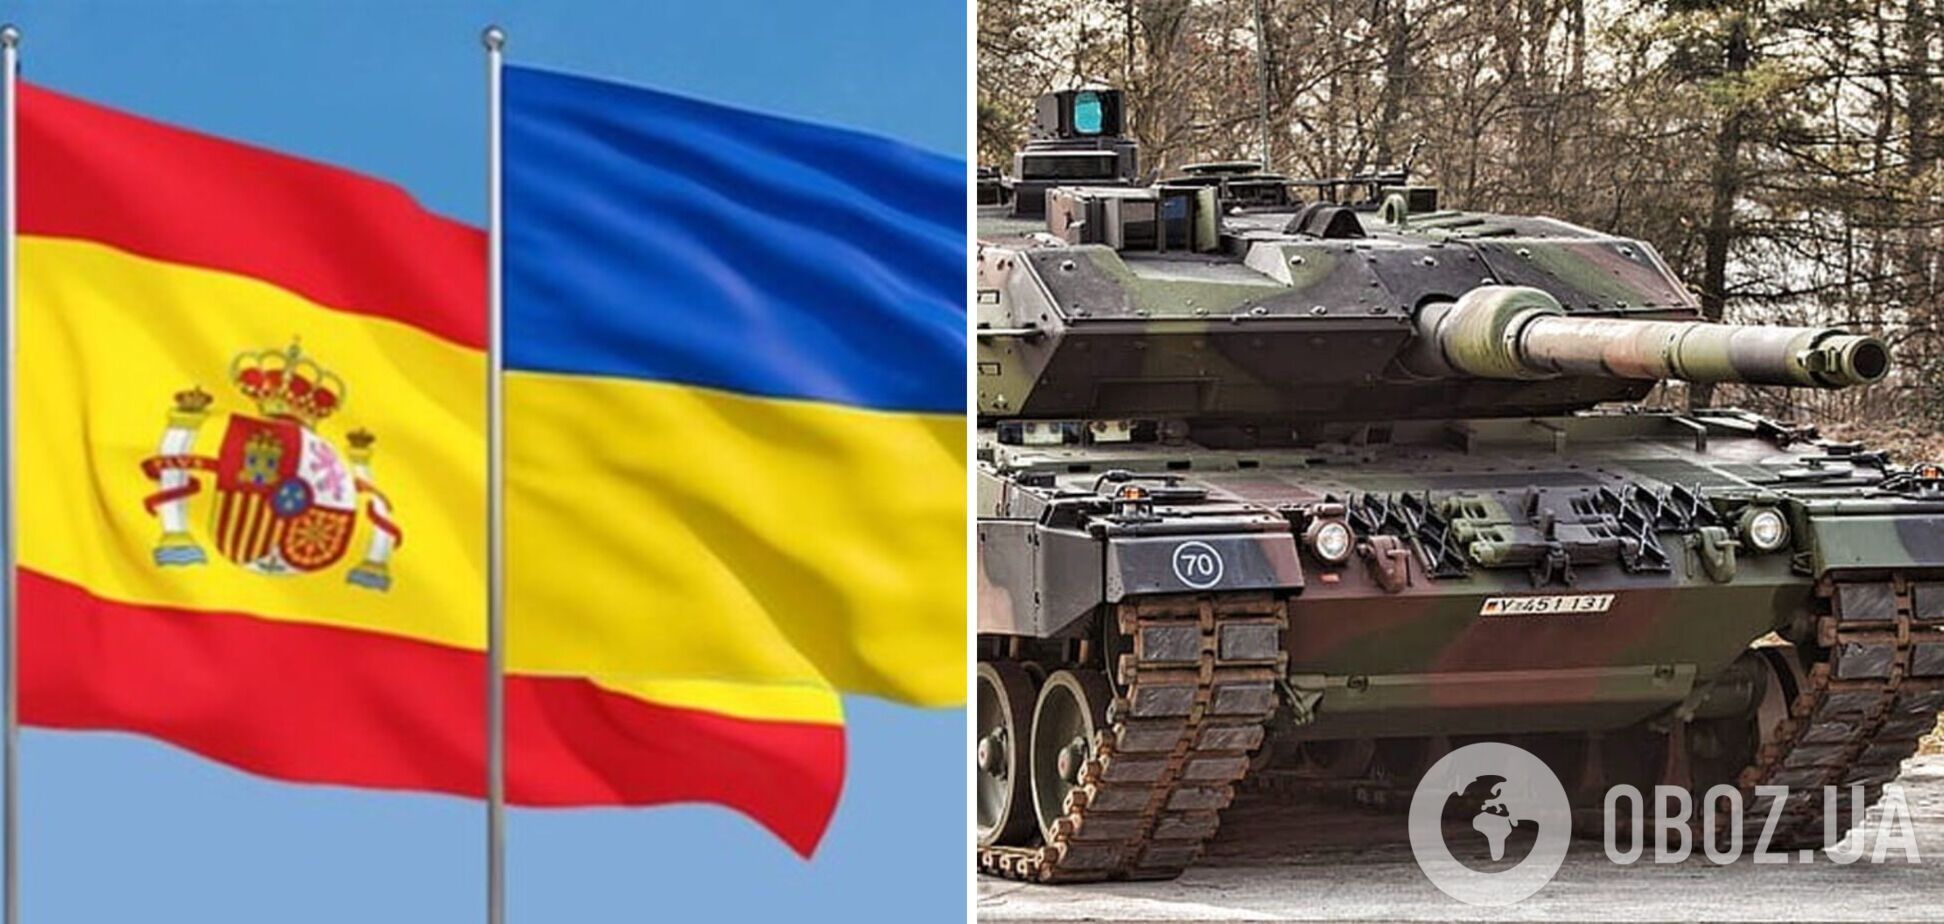 Стало известно, сколько танков Leopard 2 Испания может передать Украине